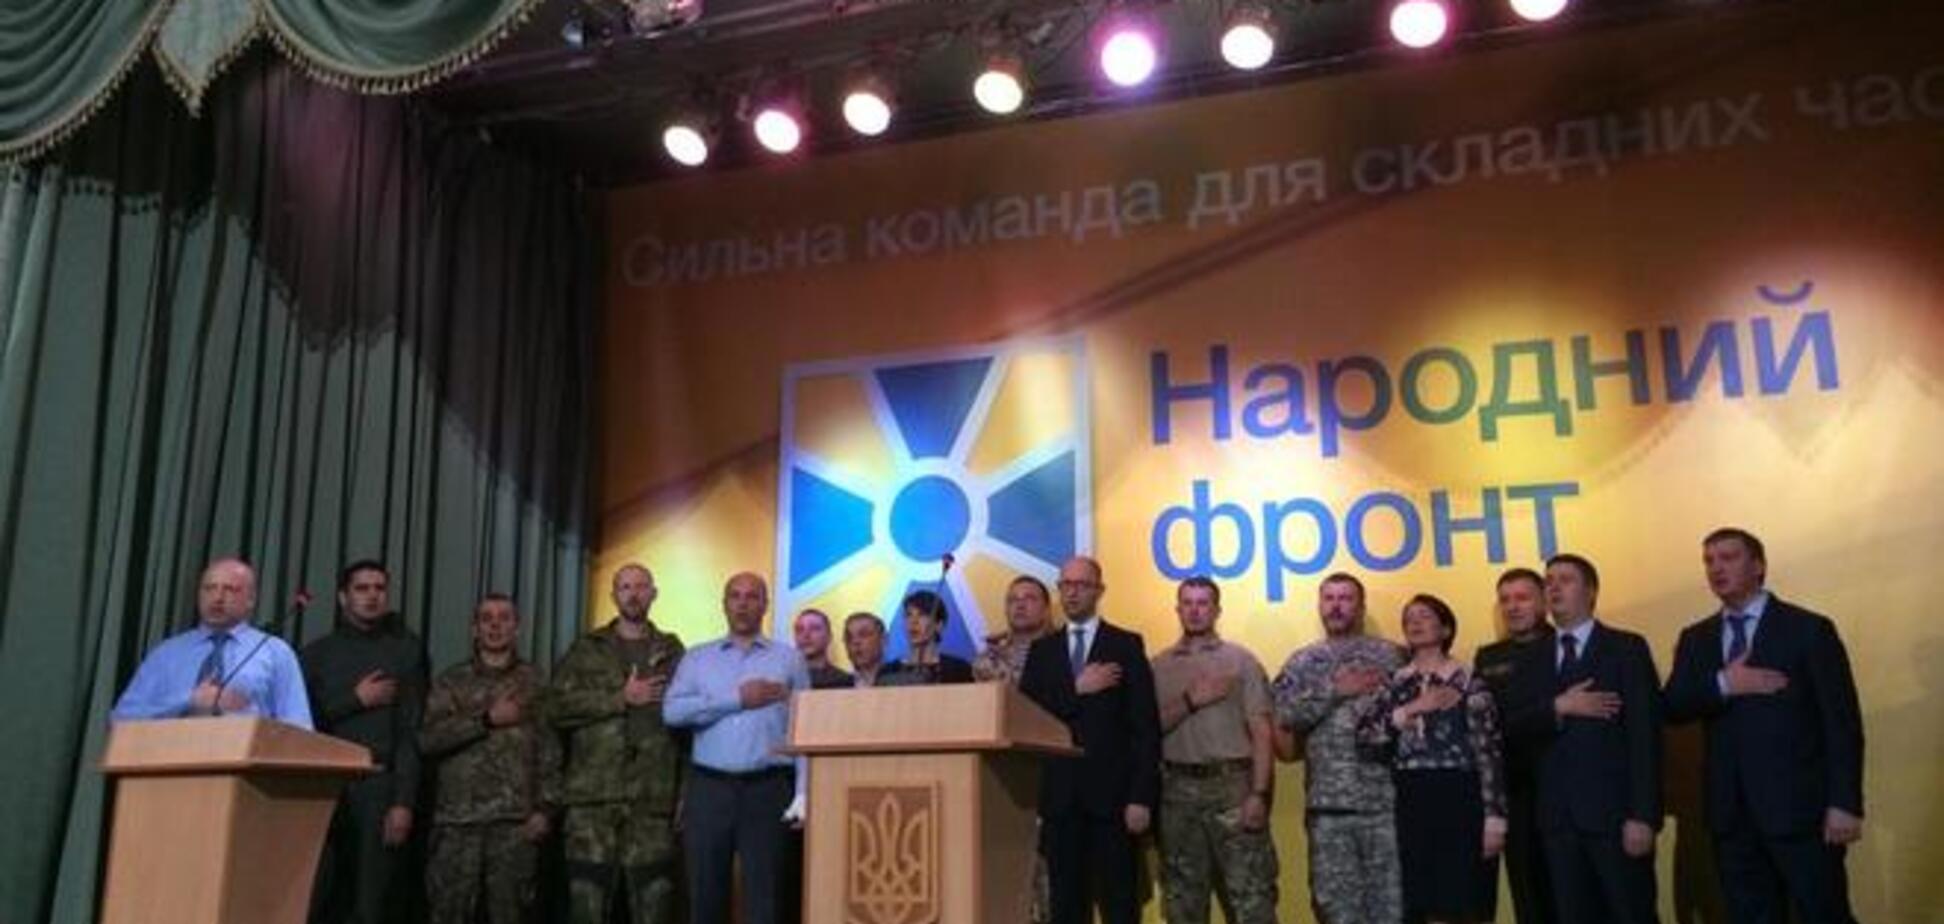 Яценюк і Ко не мають права на бренд 'Народний фронт' - журналіст